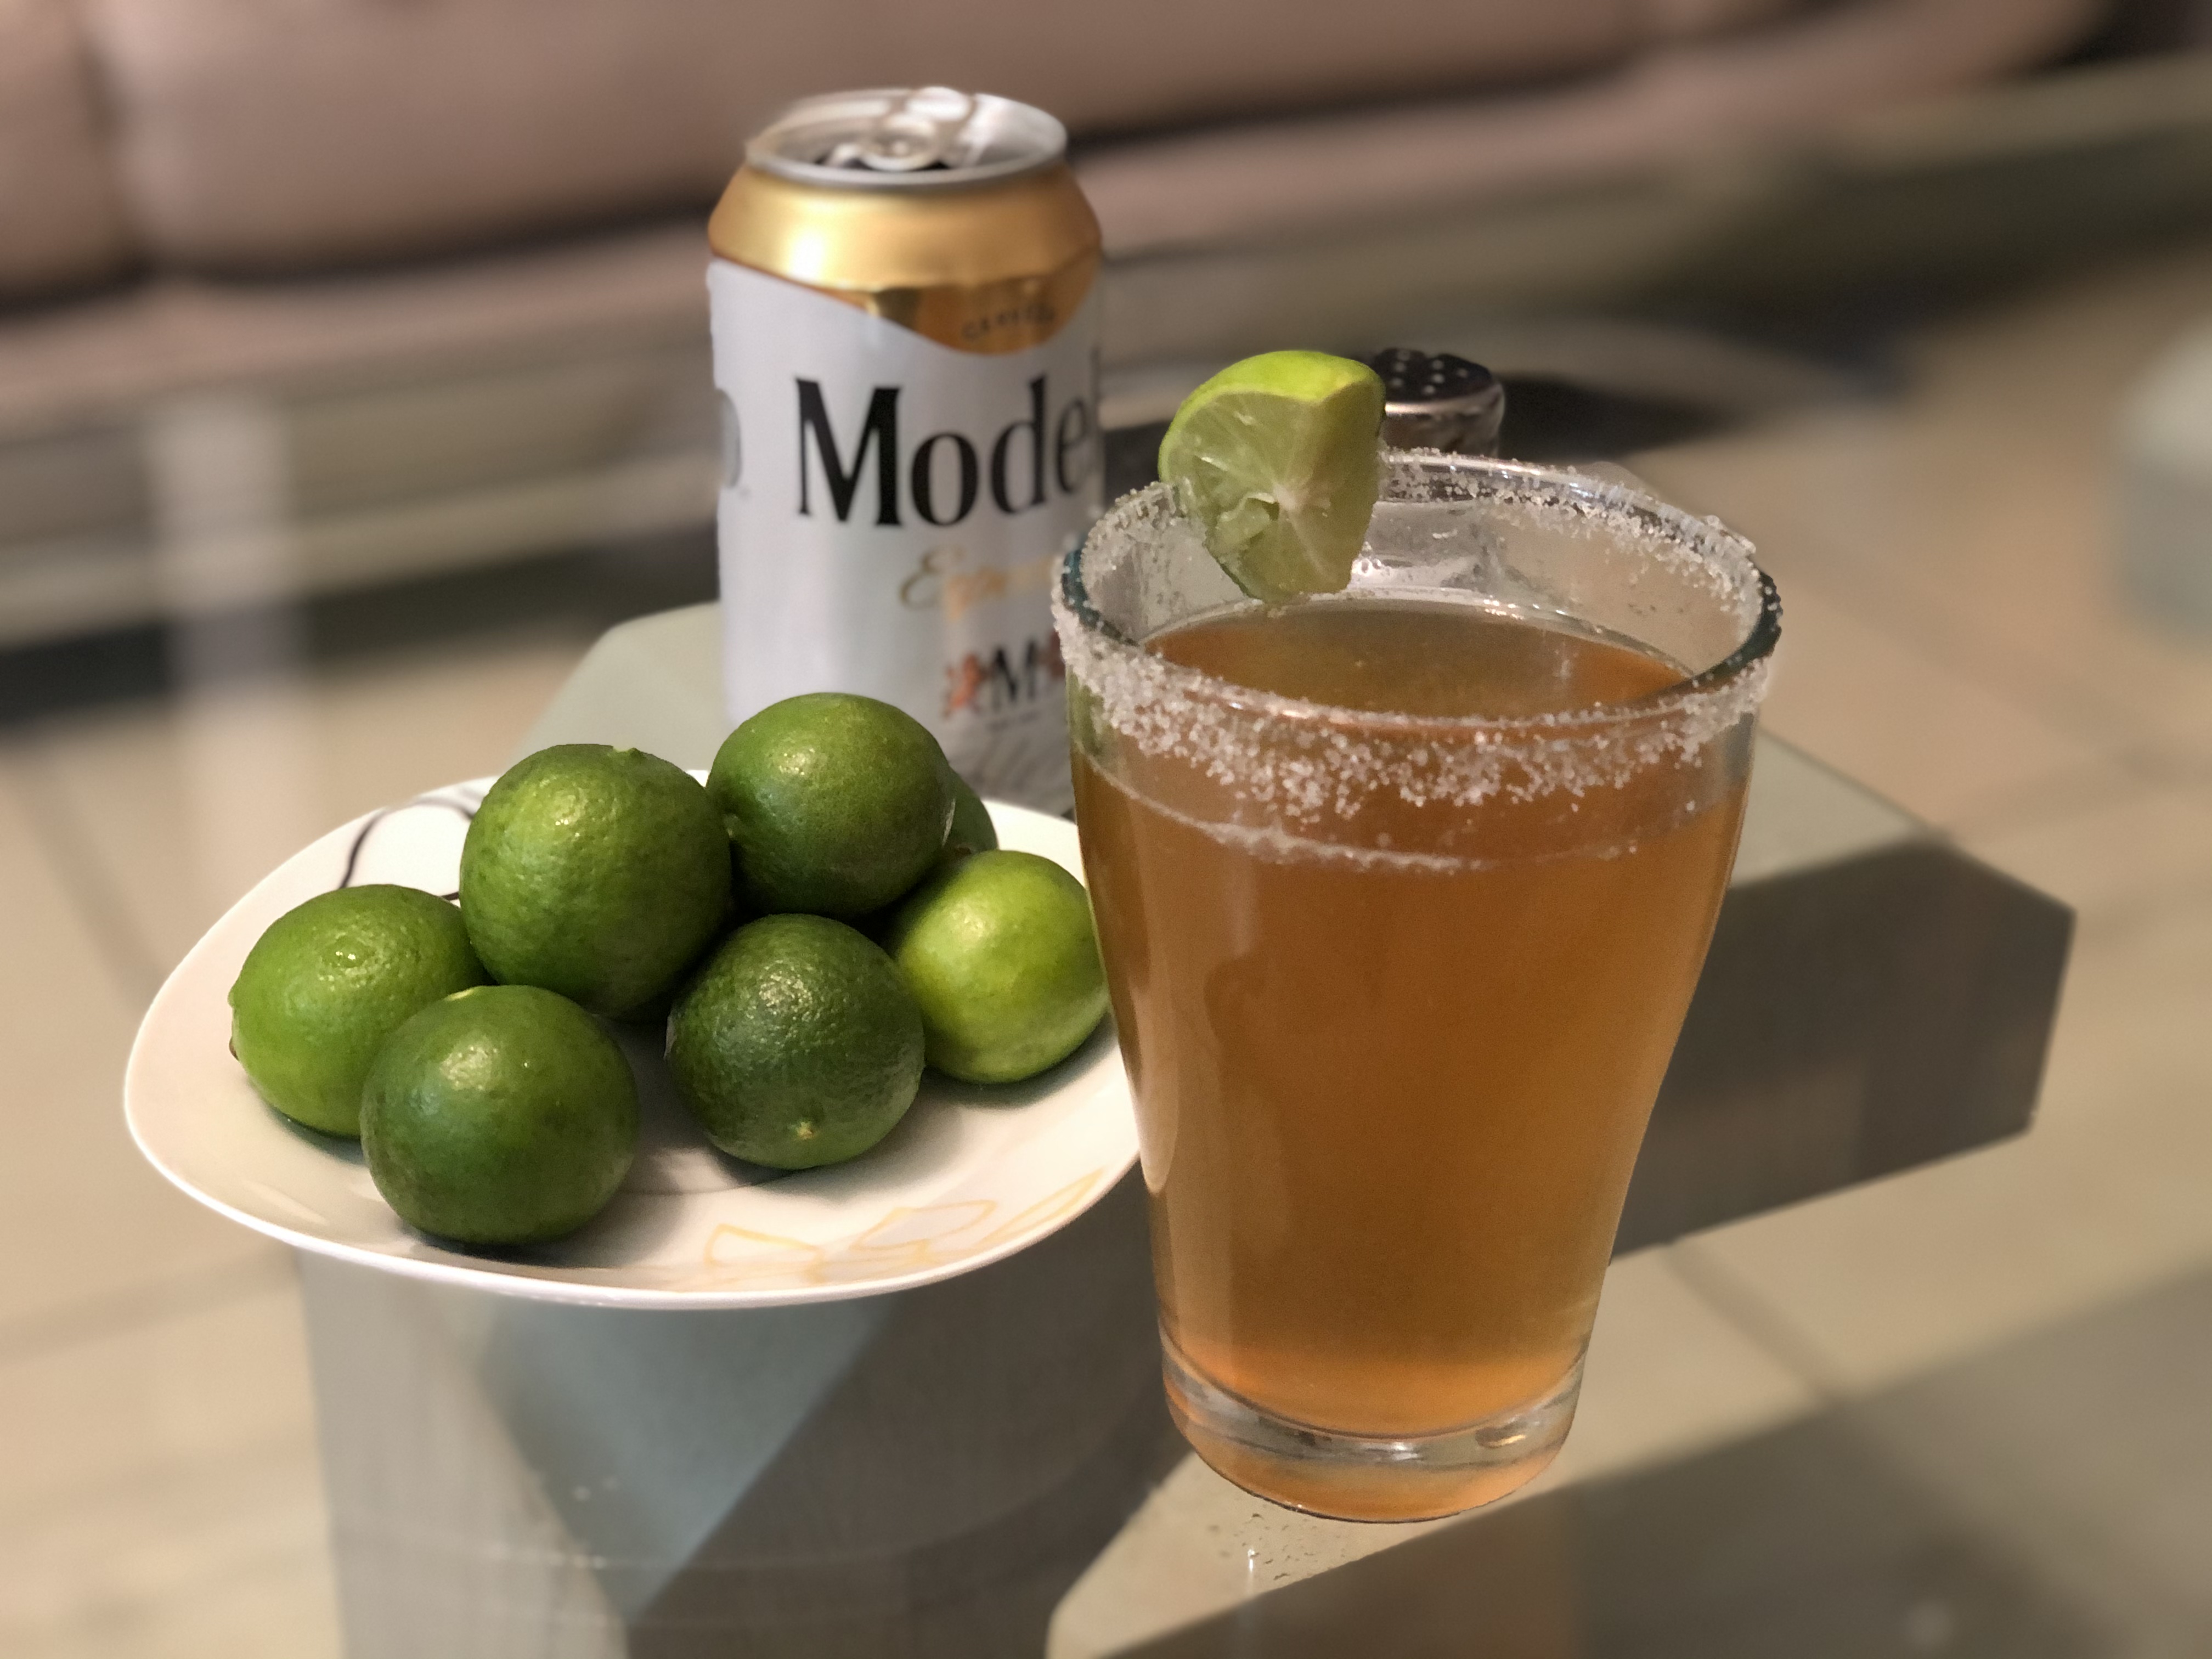 メキシコのビールカクテル Chelada チェラーダ は超簡単だから家で作りましょう 駐在員のブログ Expatriate Employee Blog